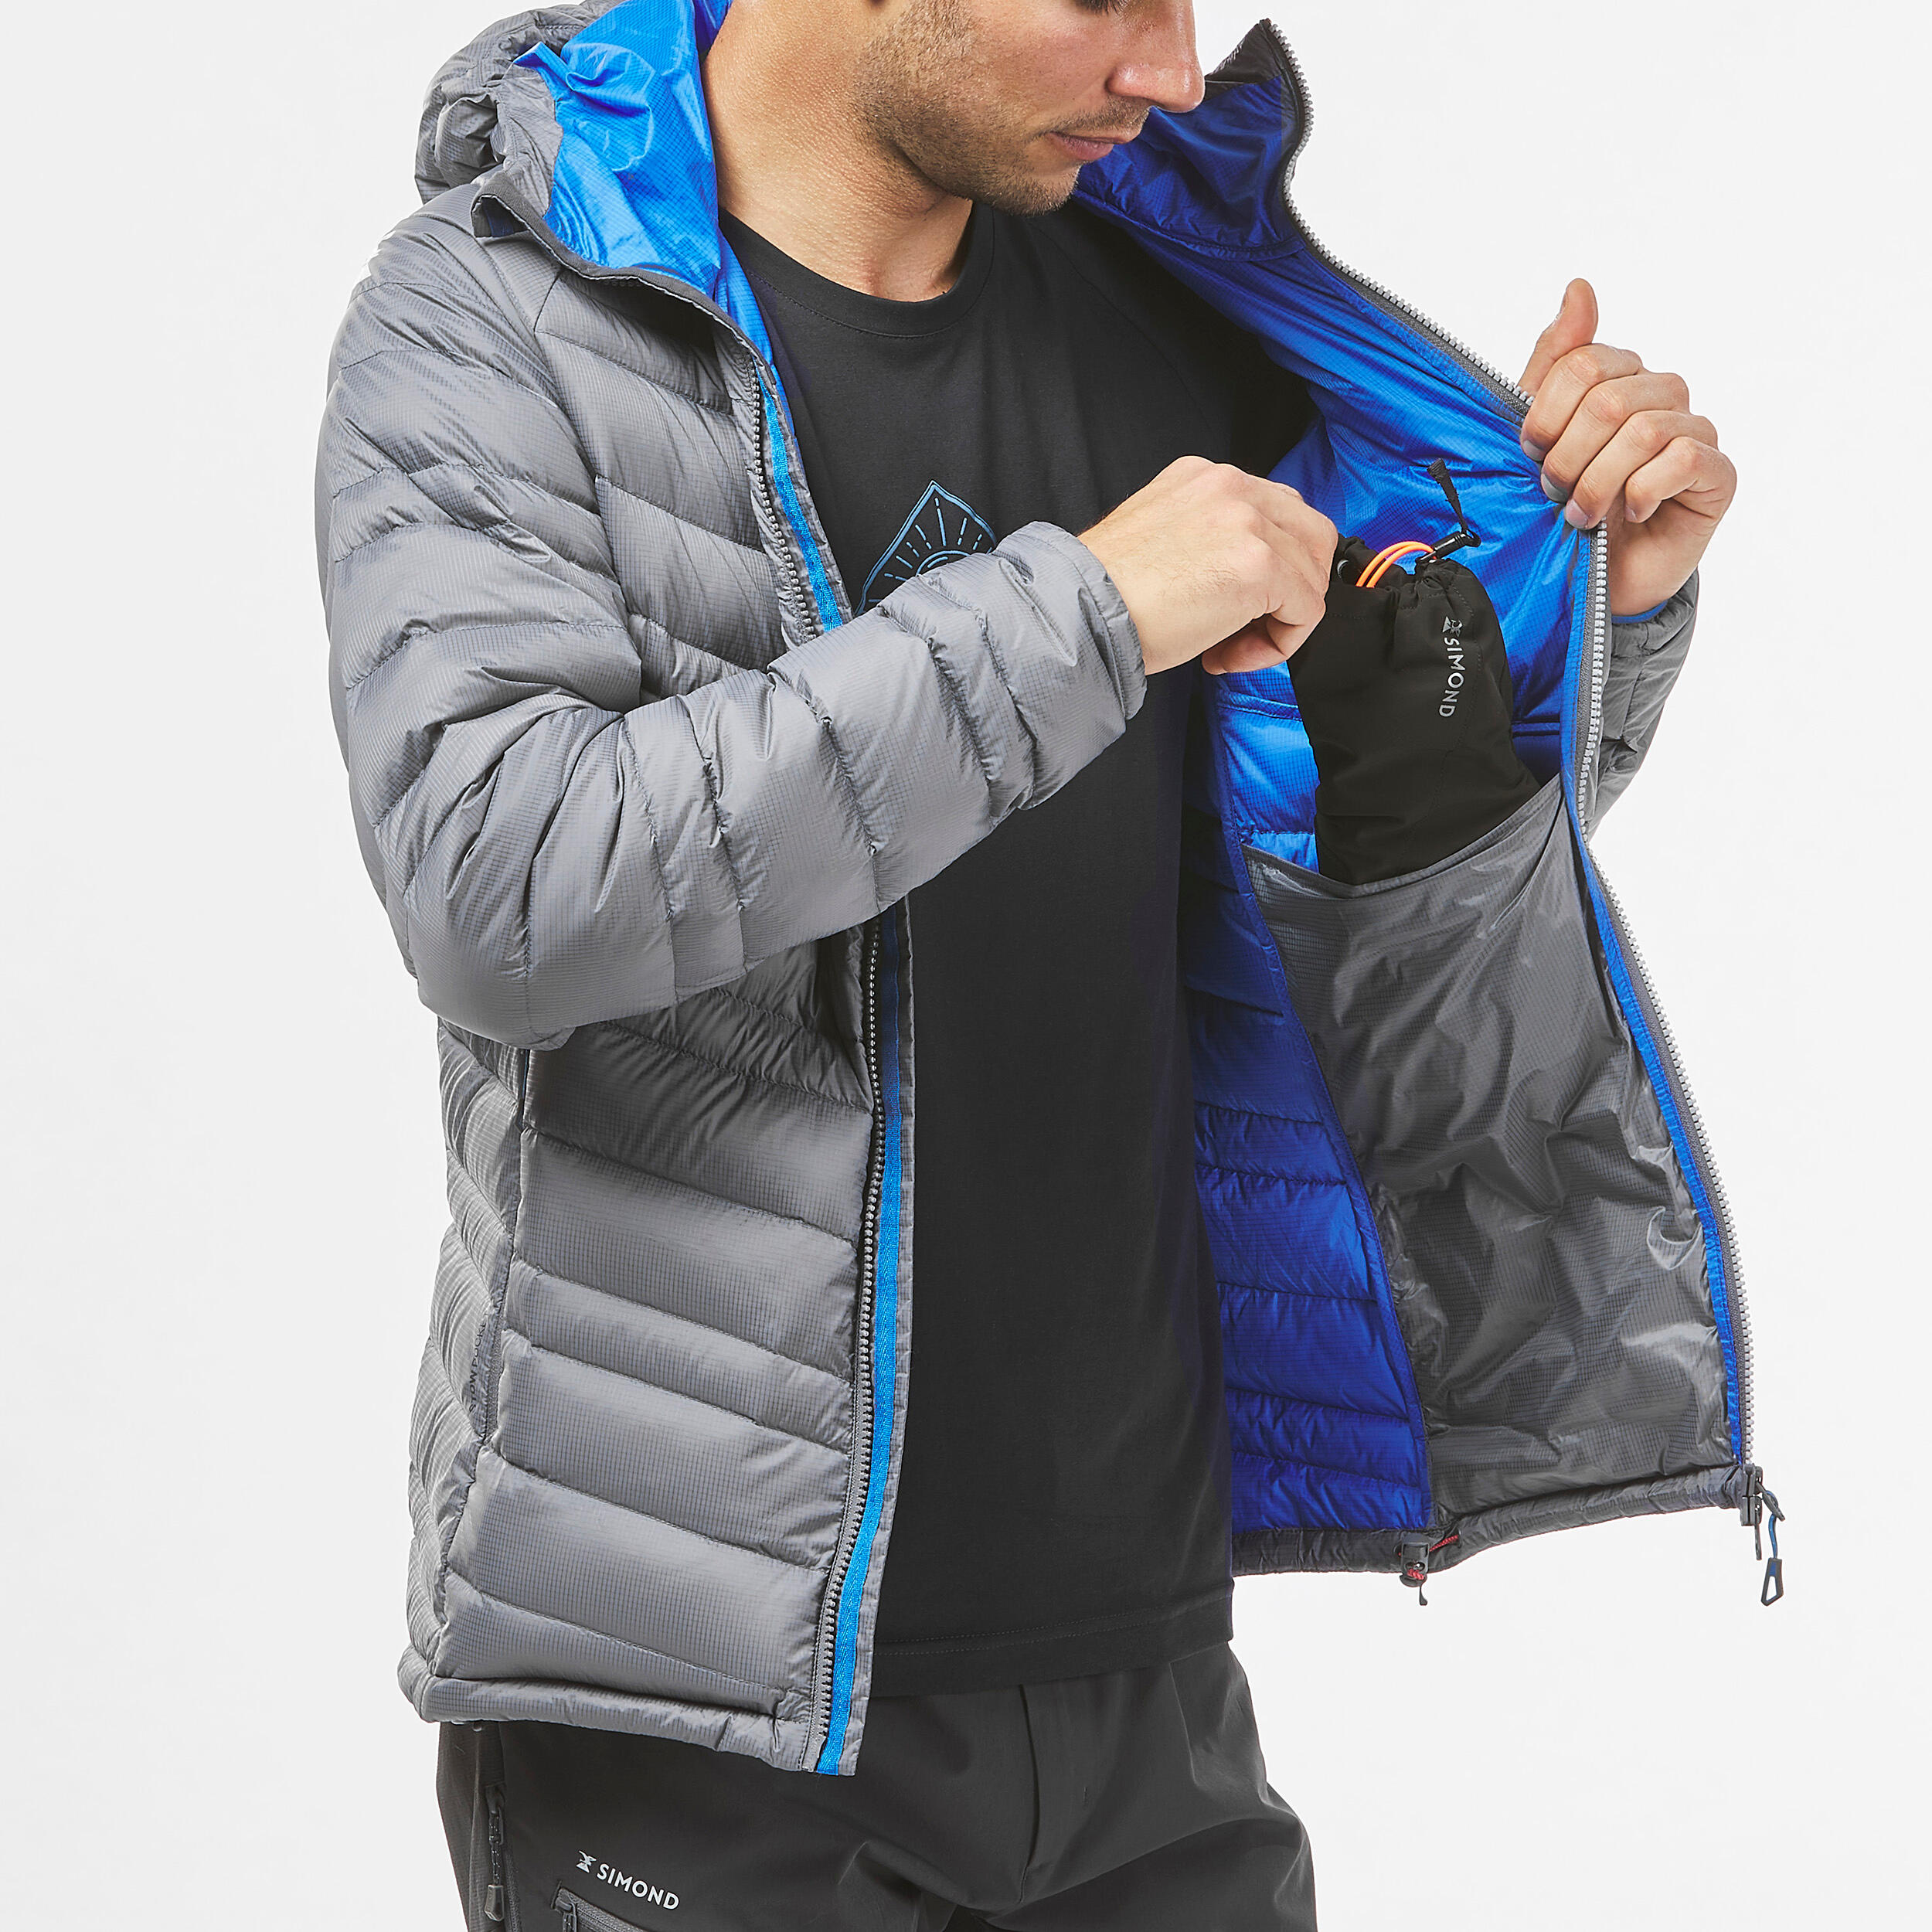 Куртка SIMOND SOFTSHELL ALPINISM Light для альпинизма — купить в  интернет-магазине по низкой цене на Яндекс Маркете